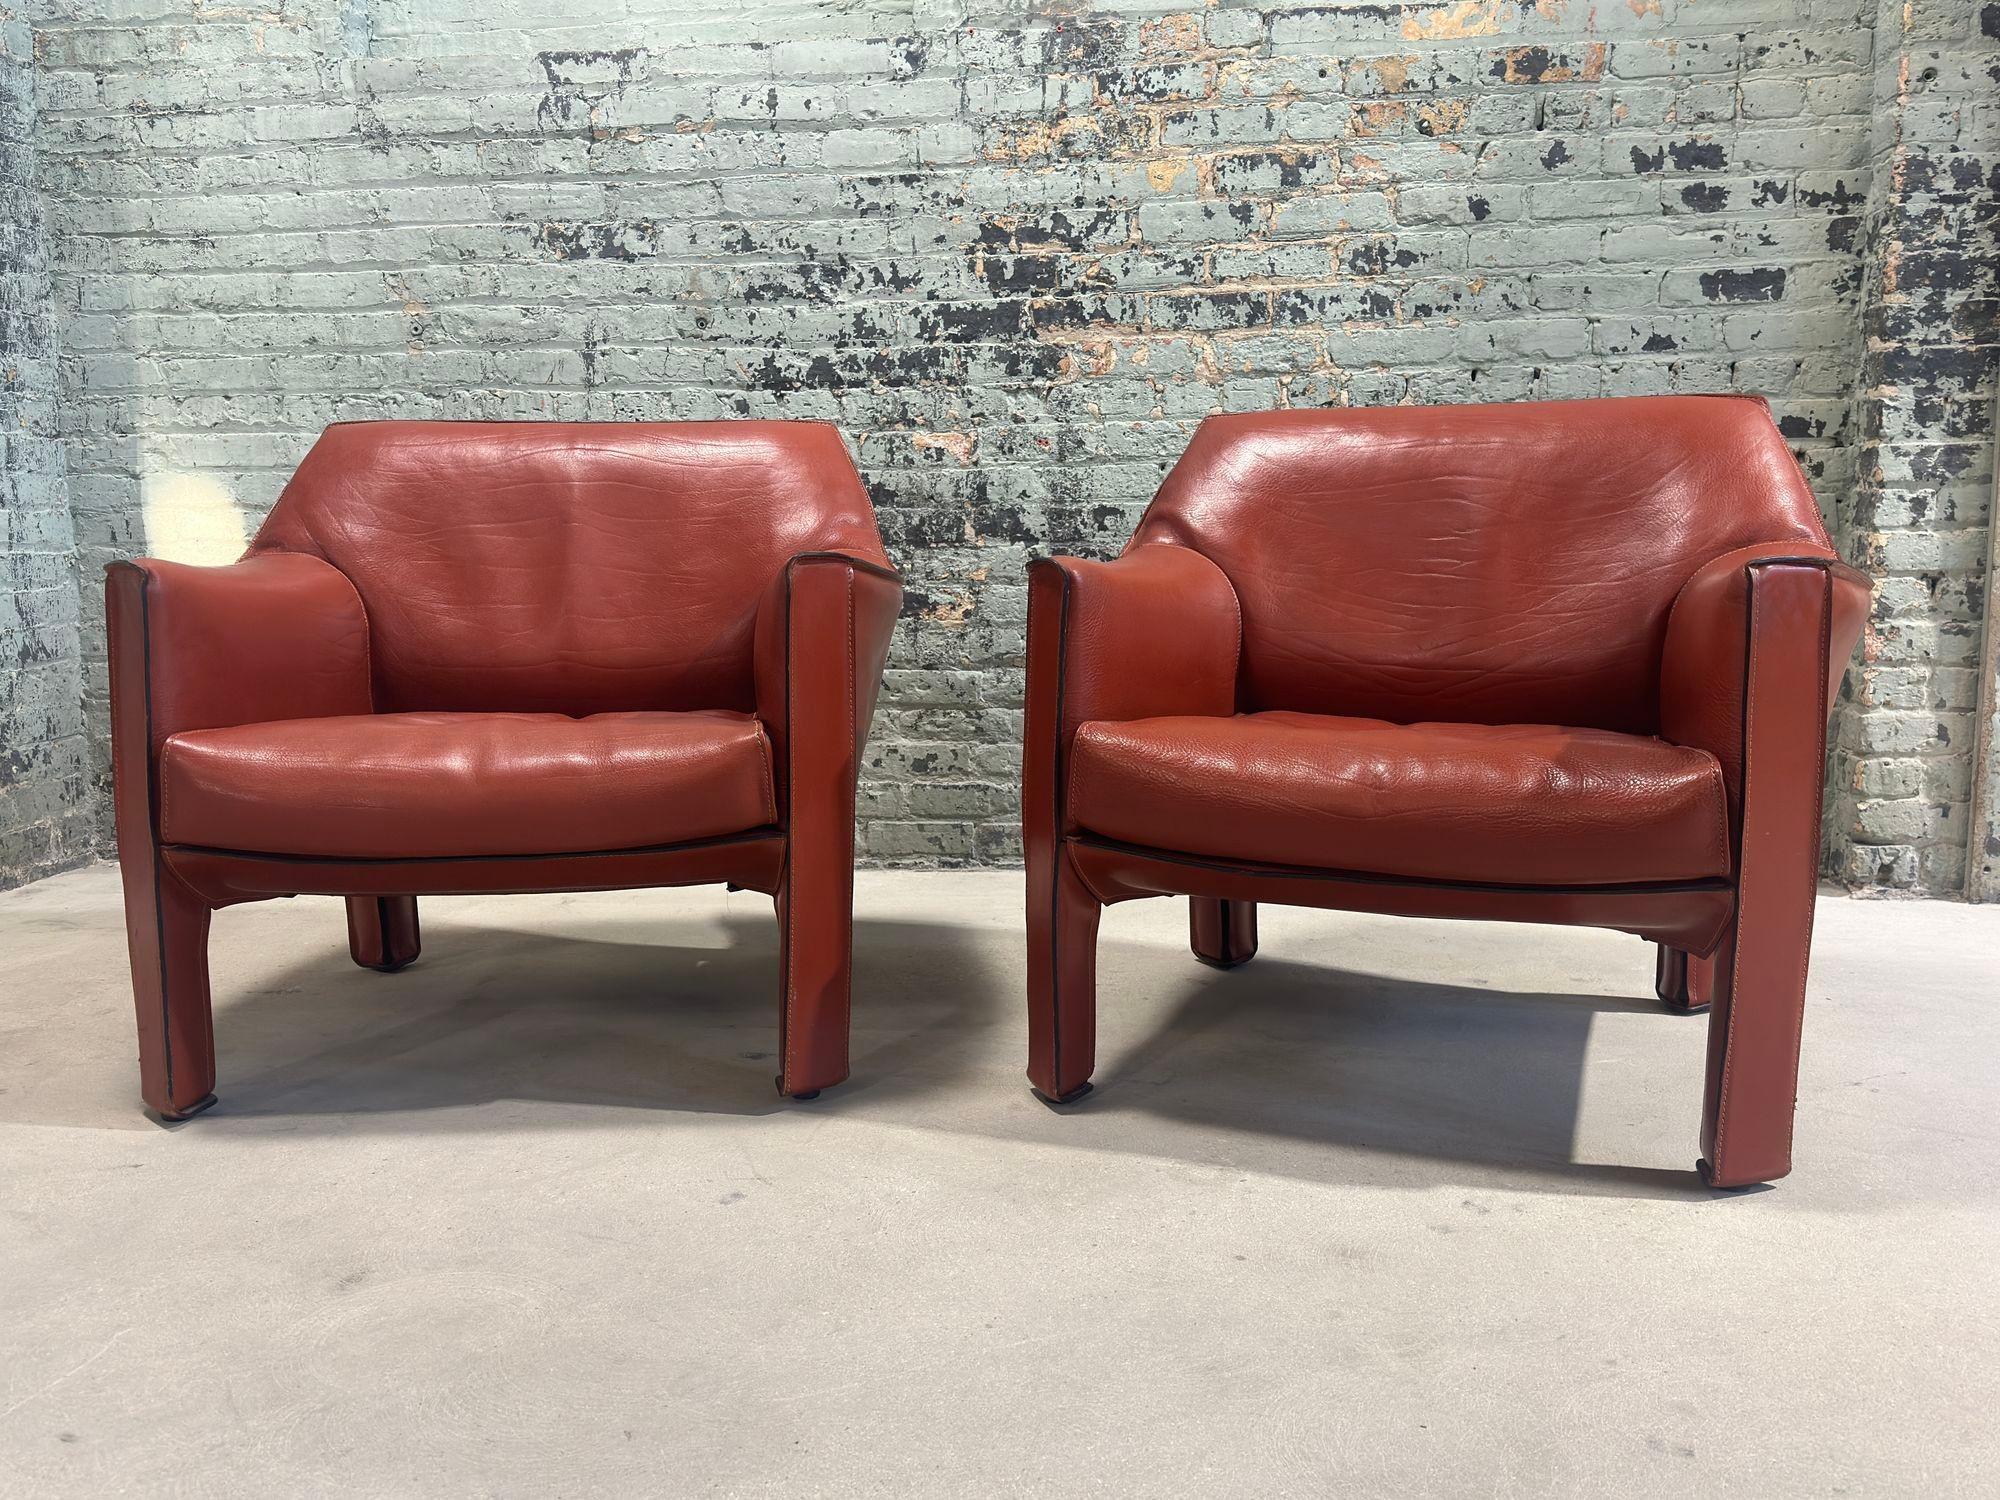 Mario Bellini Paar Leder Cab Lounge Stühle, Modell 415, Italien 1970er Jahre. Ausgezeichneter Originalzustand. Konstruiert aus geschweißten Stahlrahmen.
Die Stühle wurden von Mario Bellini für Cassina, Italien, entworfen.